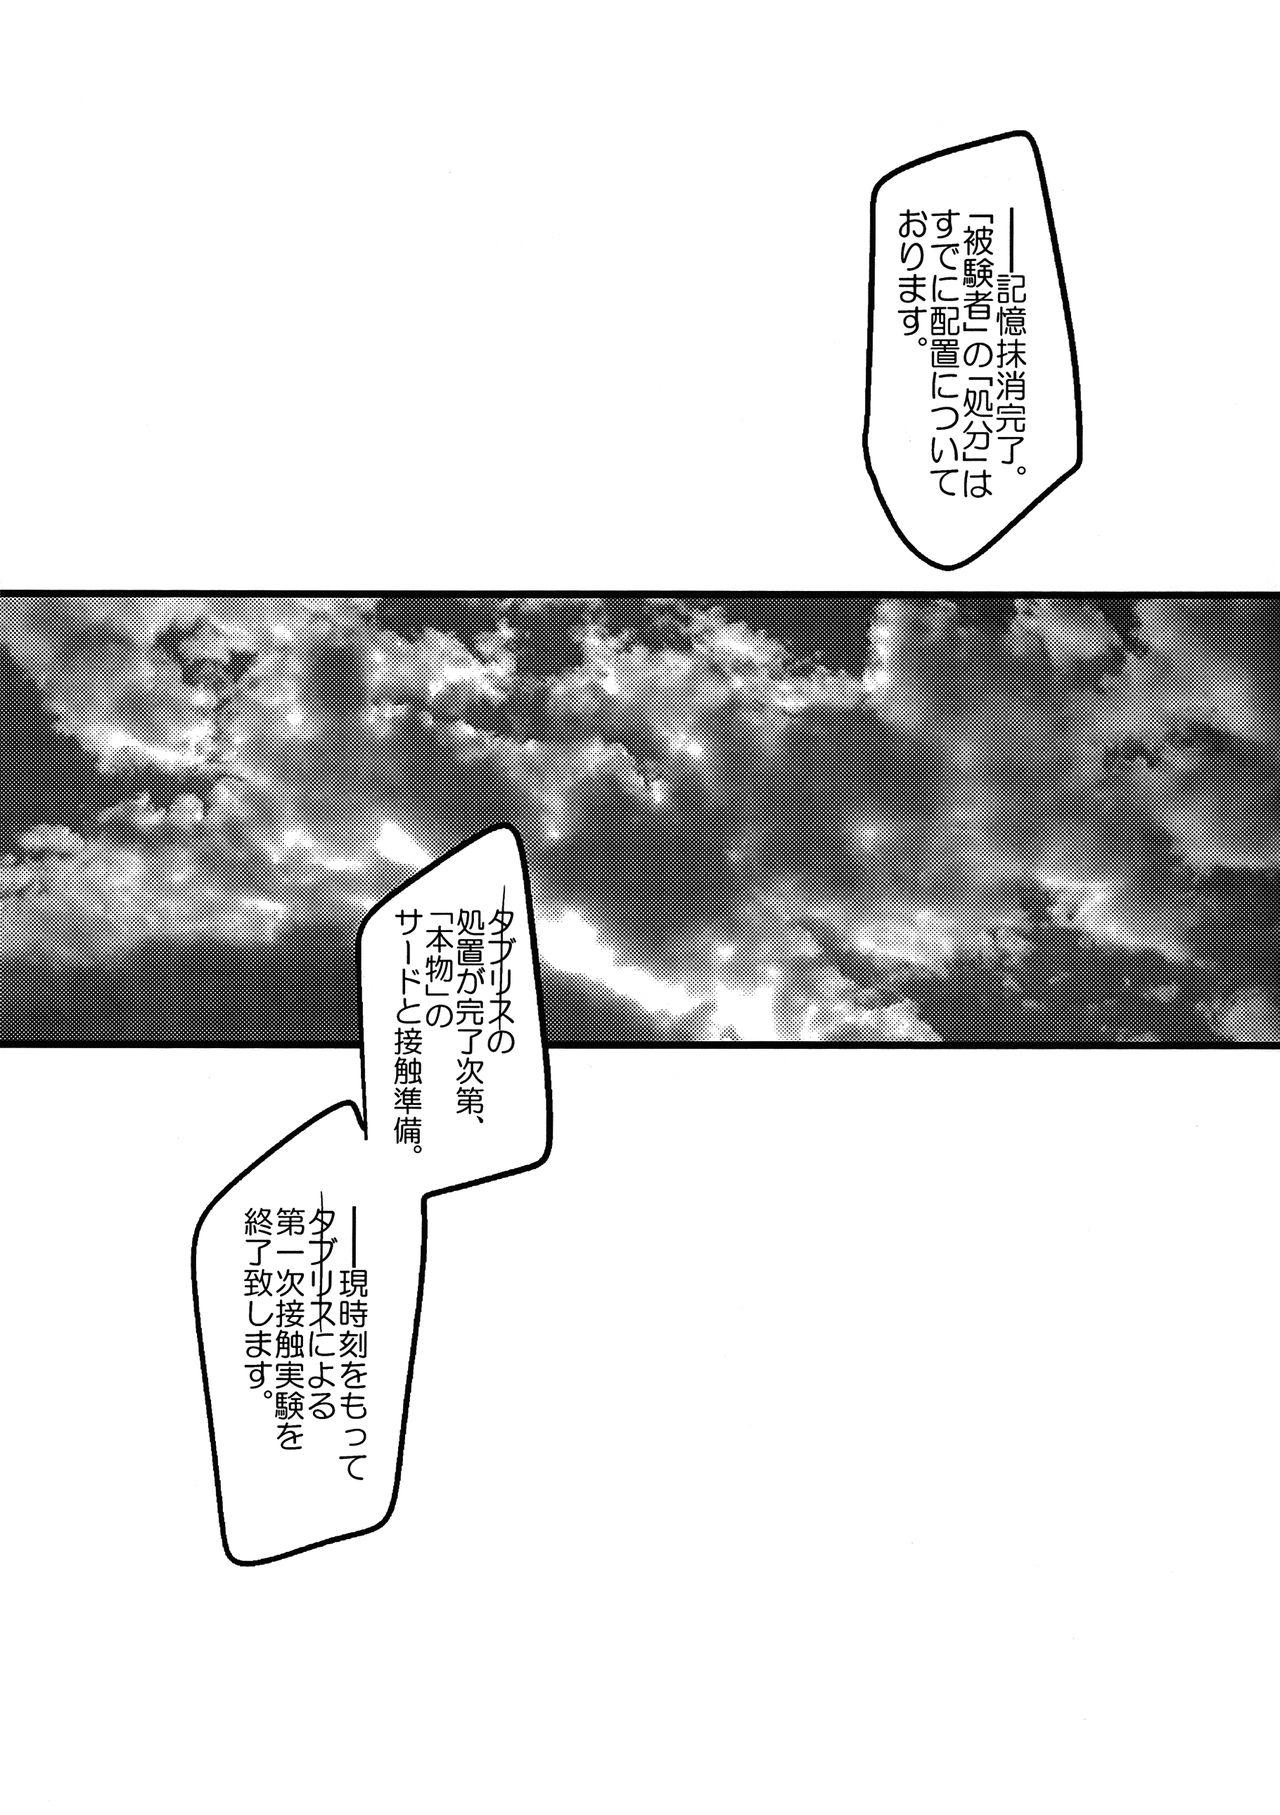 Her Ore no Koto o Ikari Shinji da to Omoikomu Saimin ni Kakatta Nagisa Kaworu-kun wa Mechamecha Yasashii - Neon genesis evangelion Fishnet - Page 11